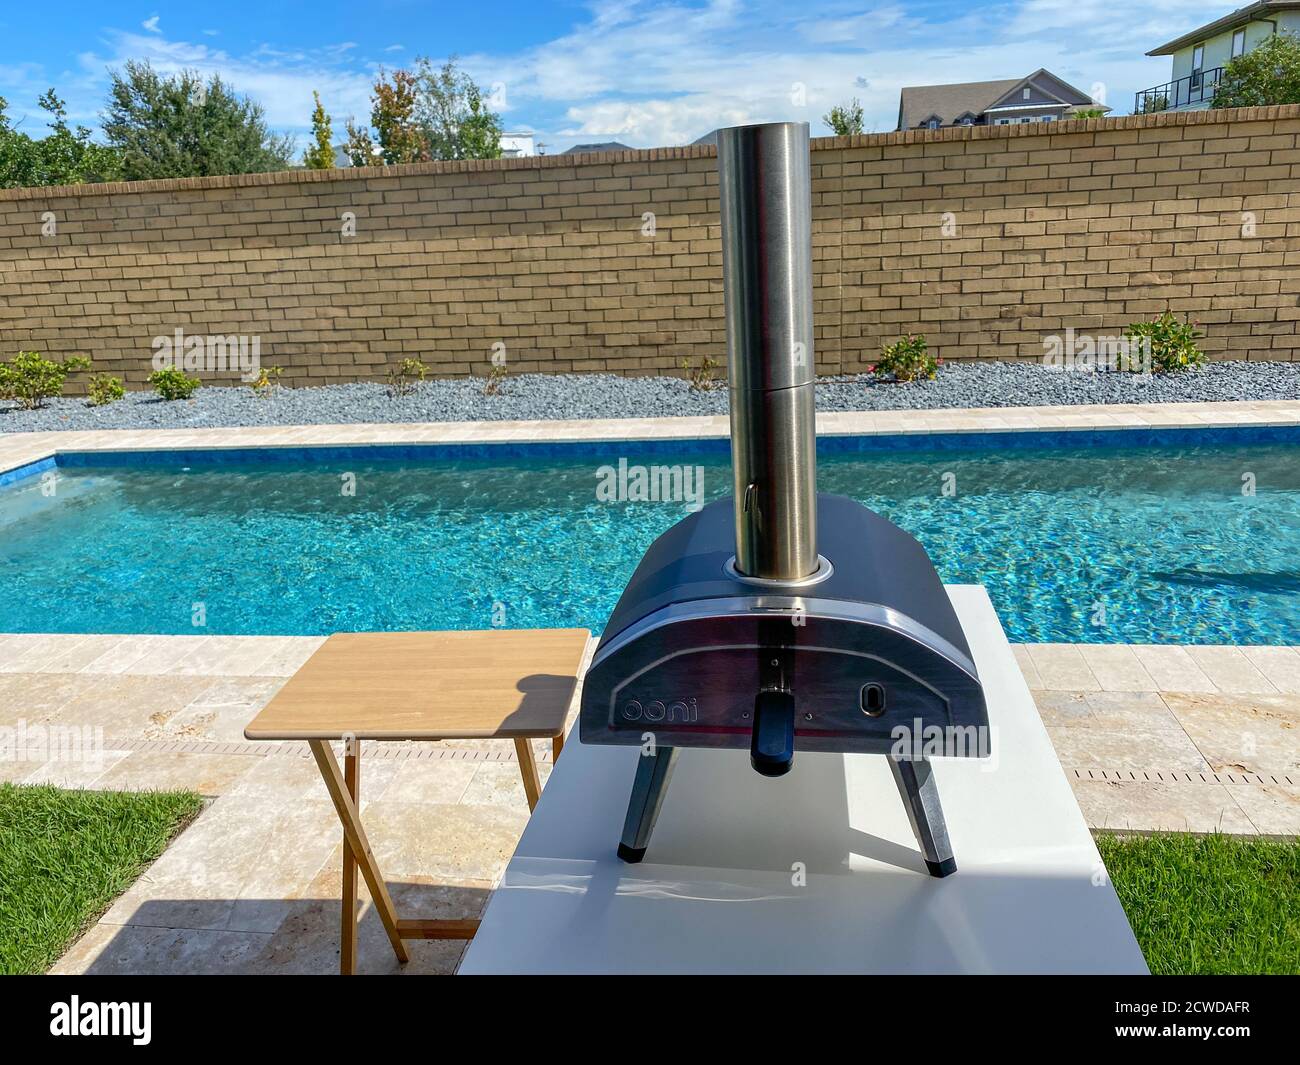 Orlando, FL/USA - 9/7/20: Un forno a legna per pizza Ooni accanto ad una  piscina in un cortile di casa Foto stock - Alamy